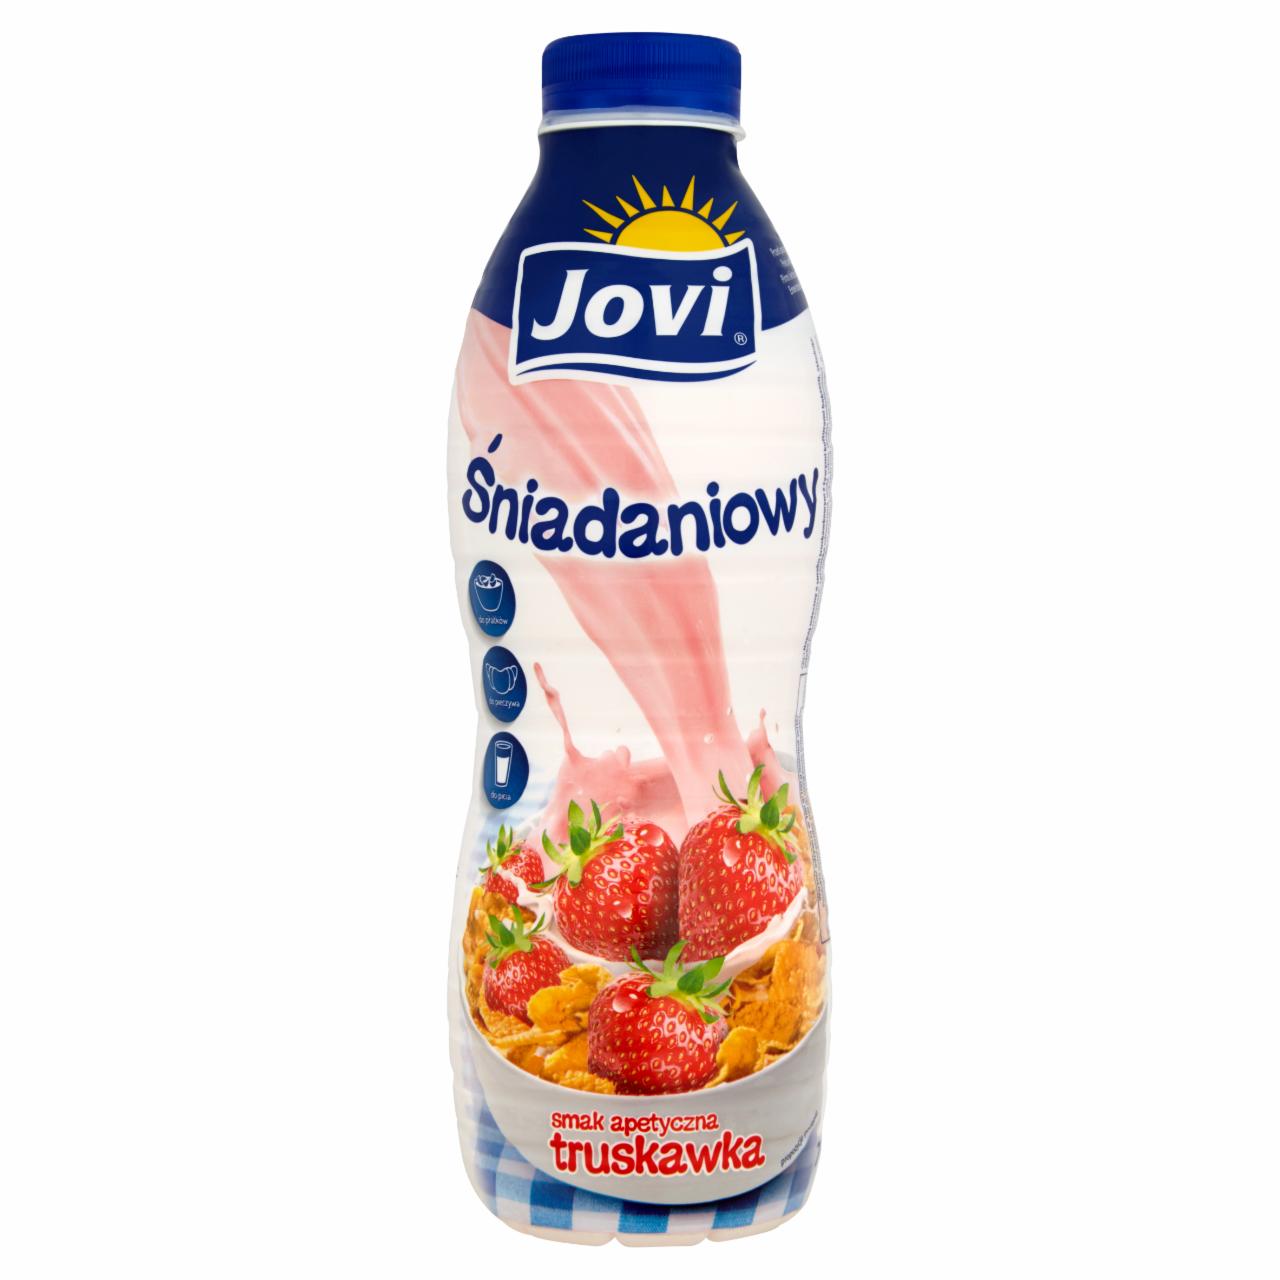 Zdjęcia - Jovi Śniadaniowy Napój mleczny smak apetyczna truskawka 700 g